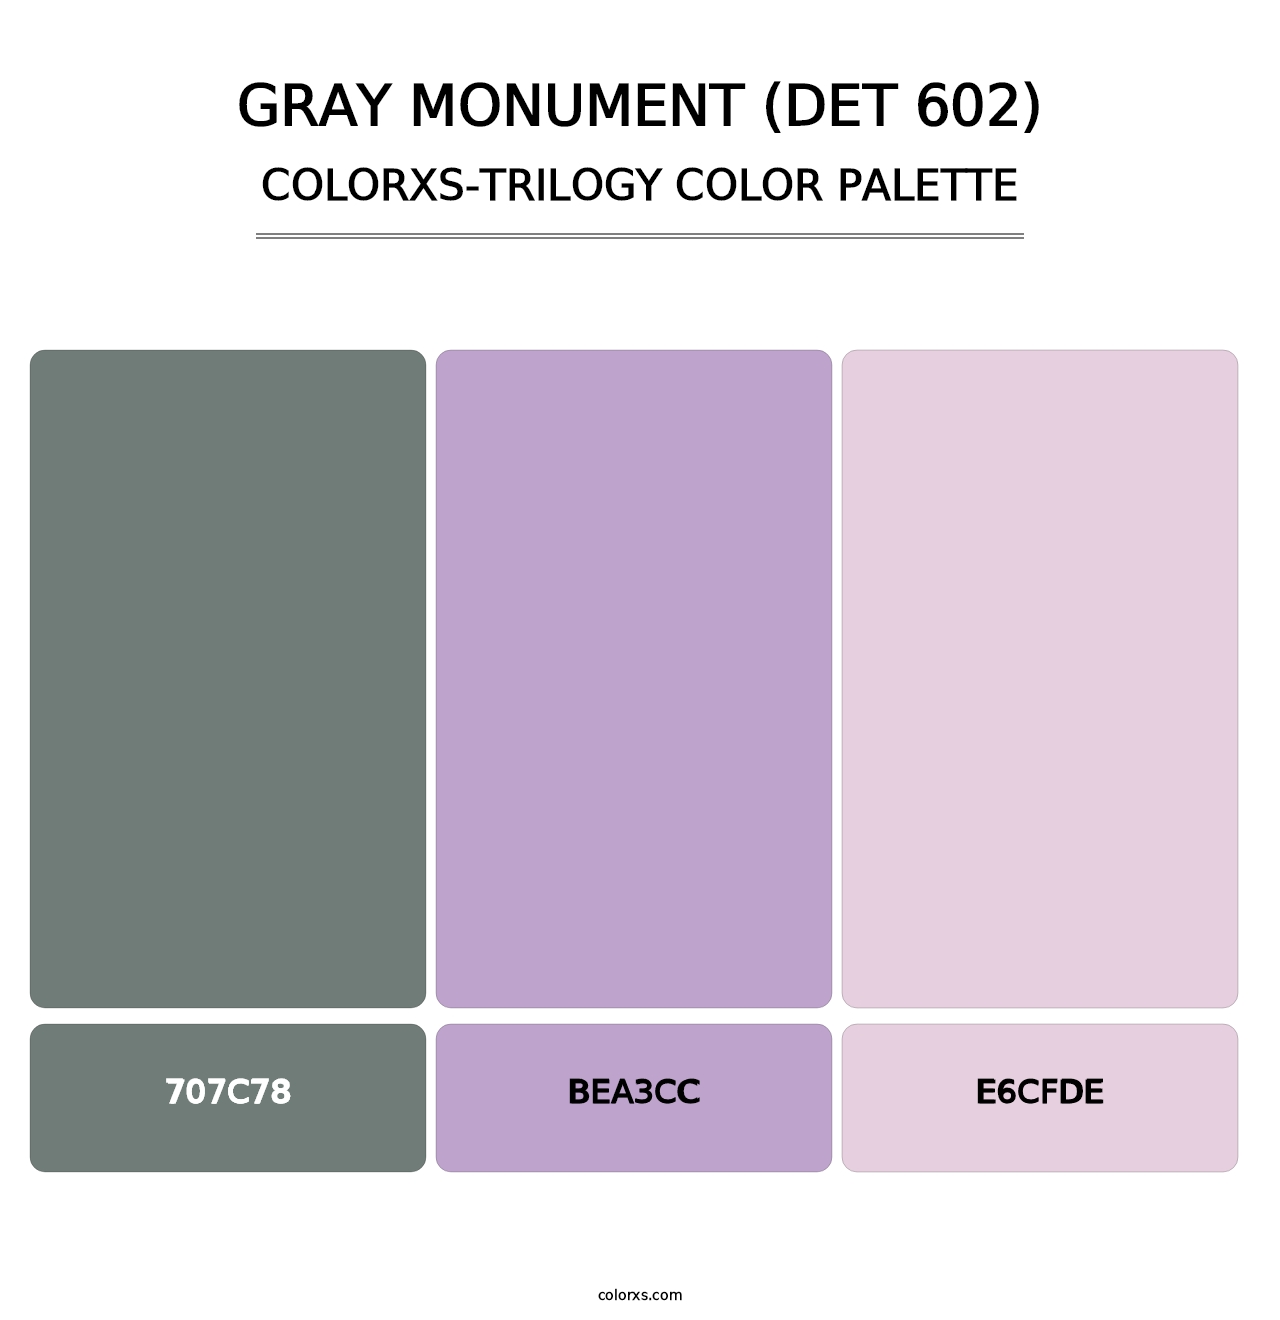 Gray Monument (DET 602) - Colorxs Trilogy Palette